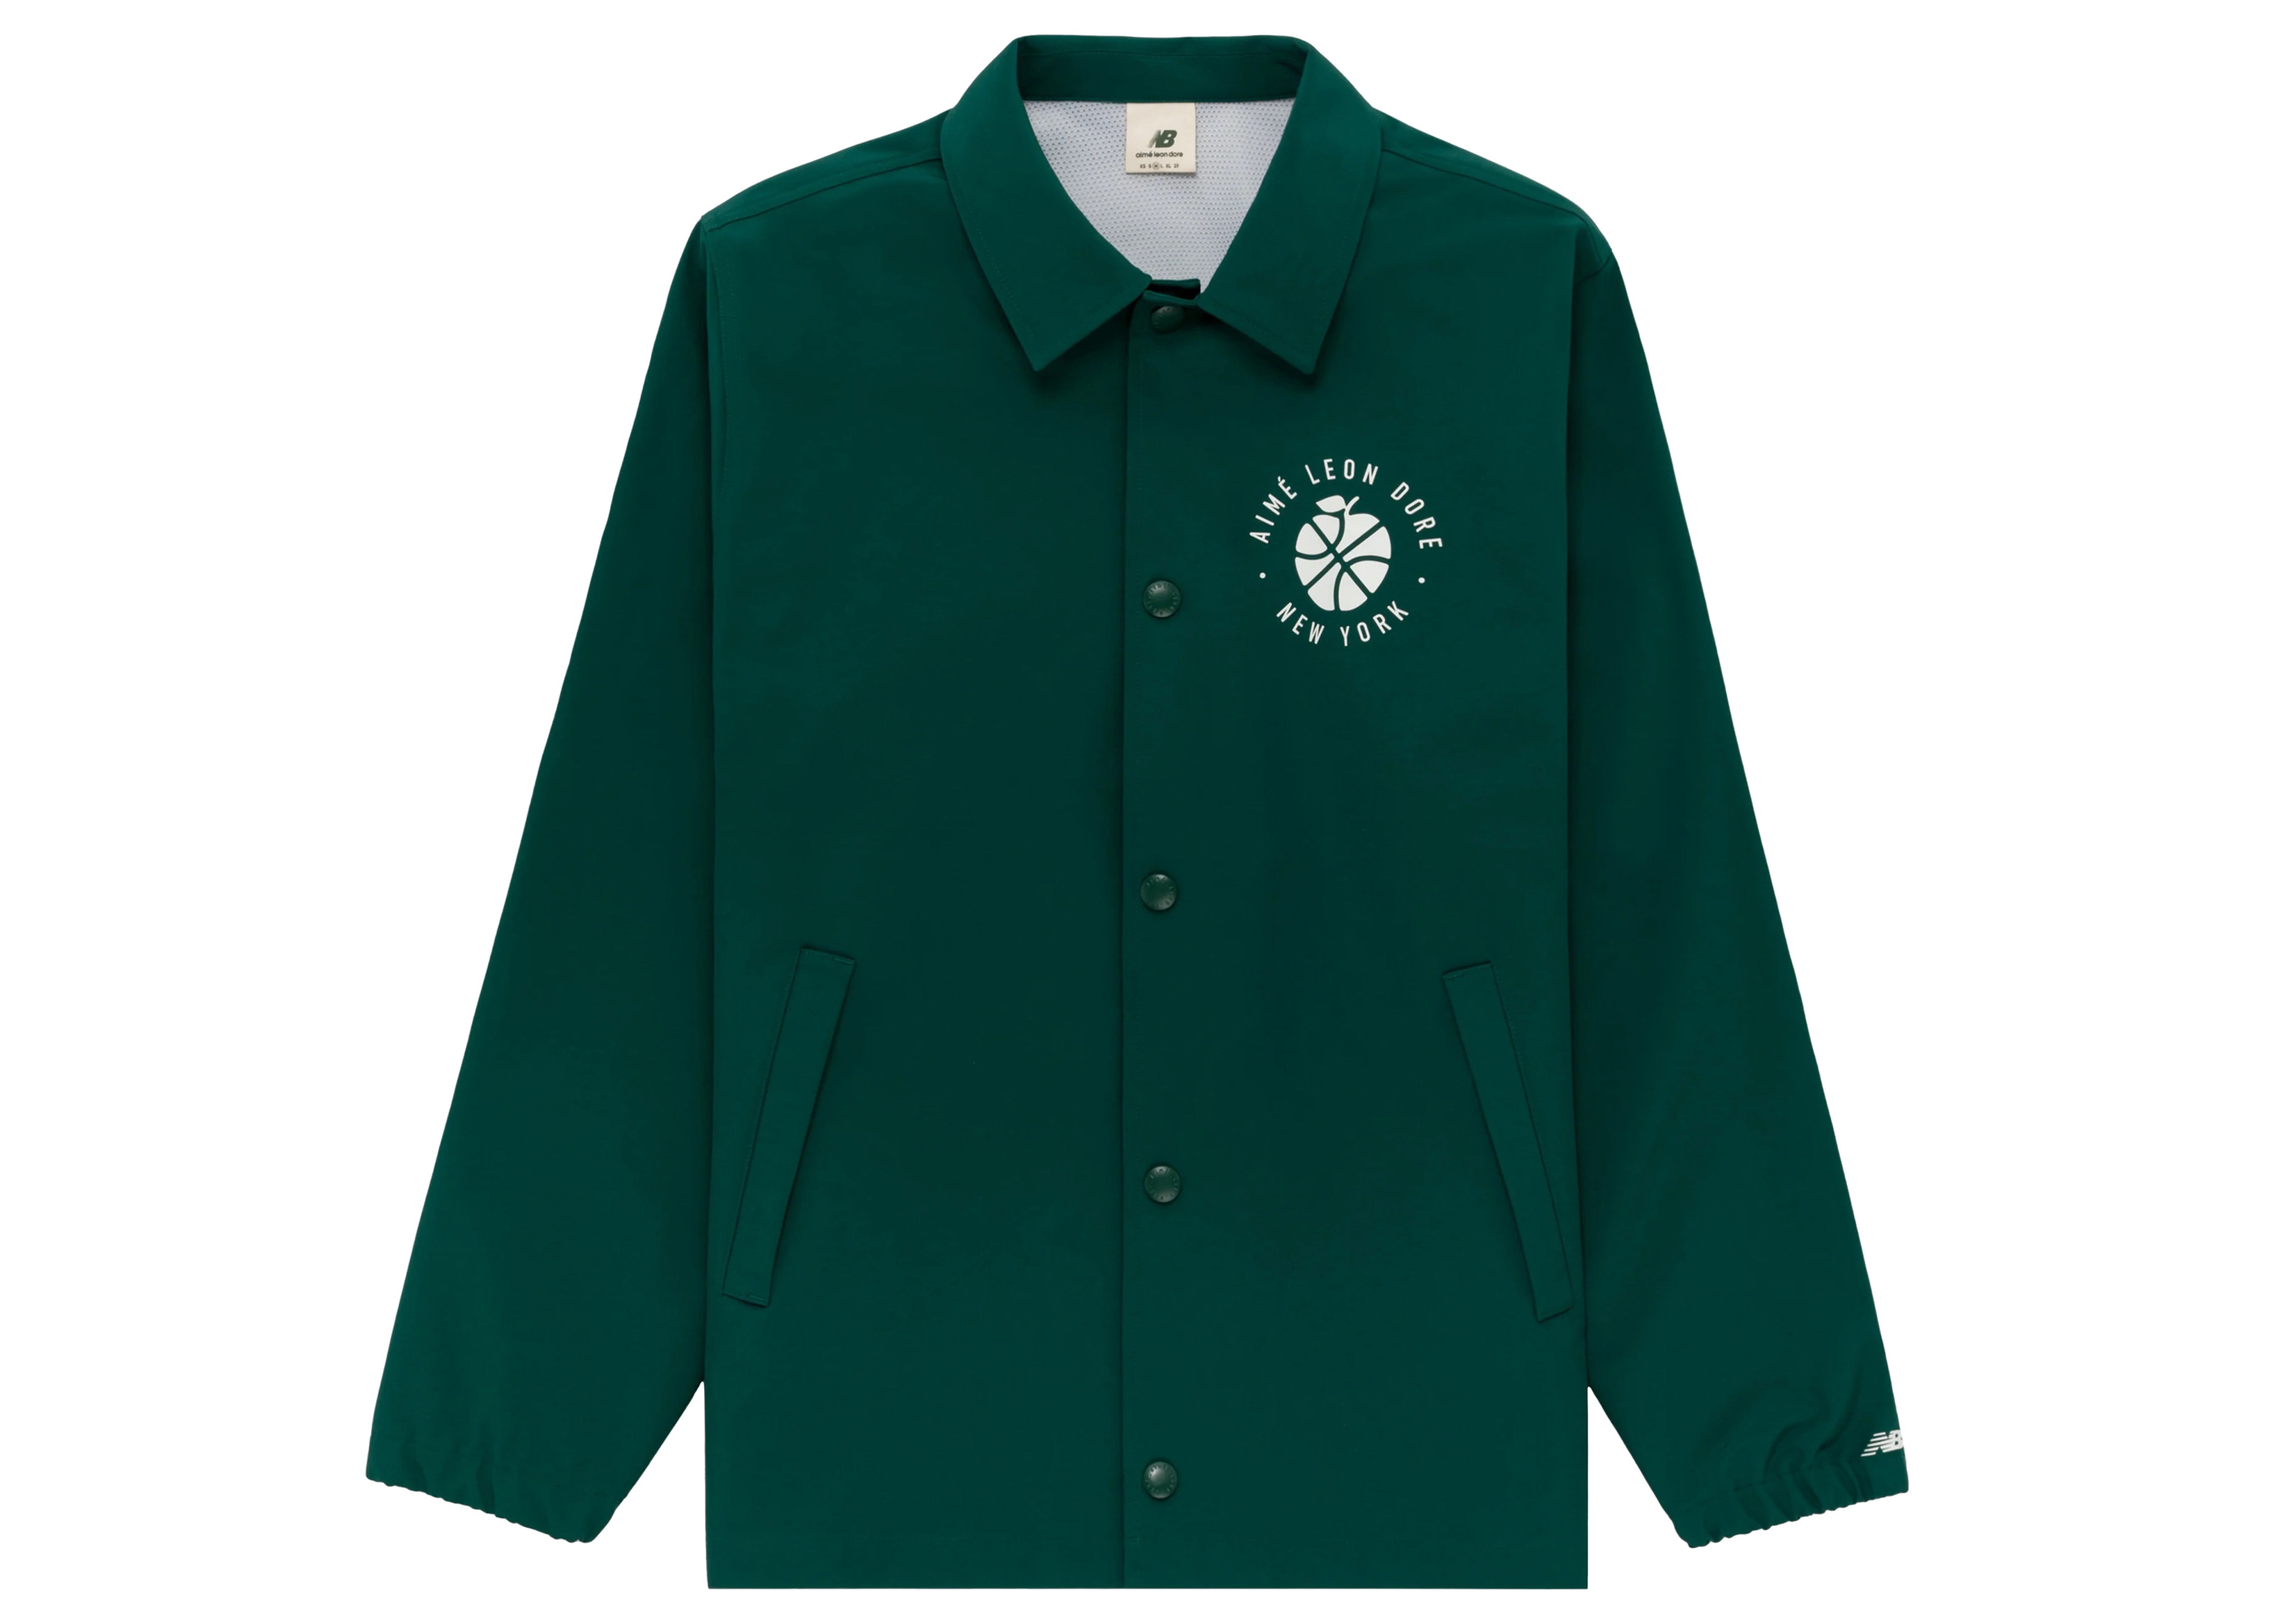 11,200円AIME LEON DORE Club Collar Jacket Olive